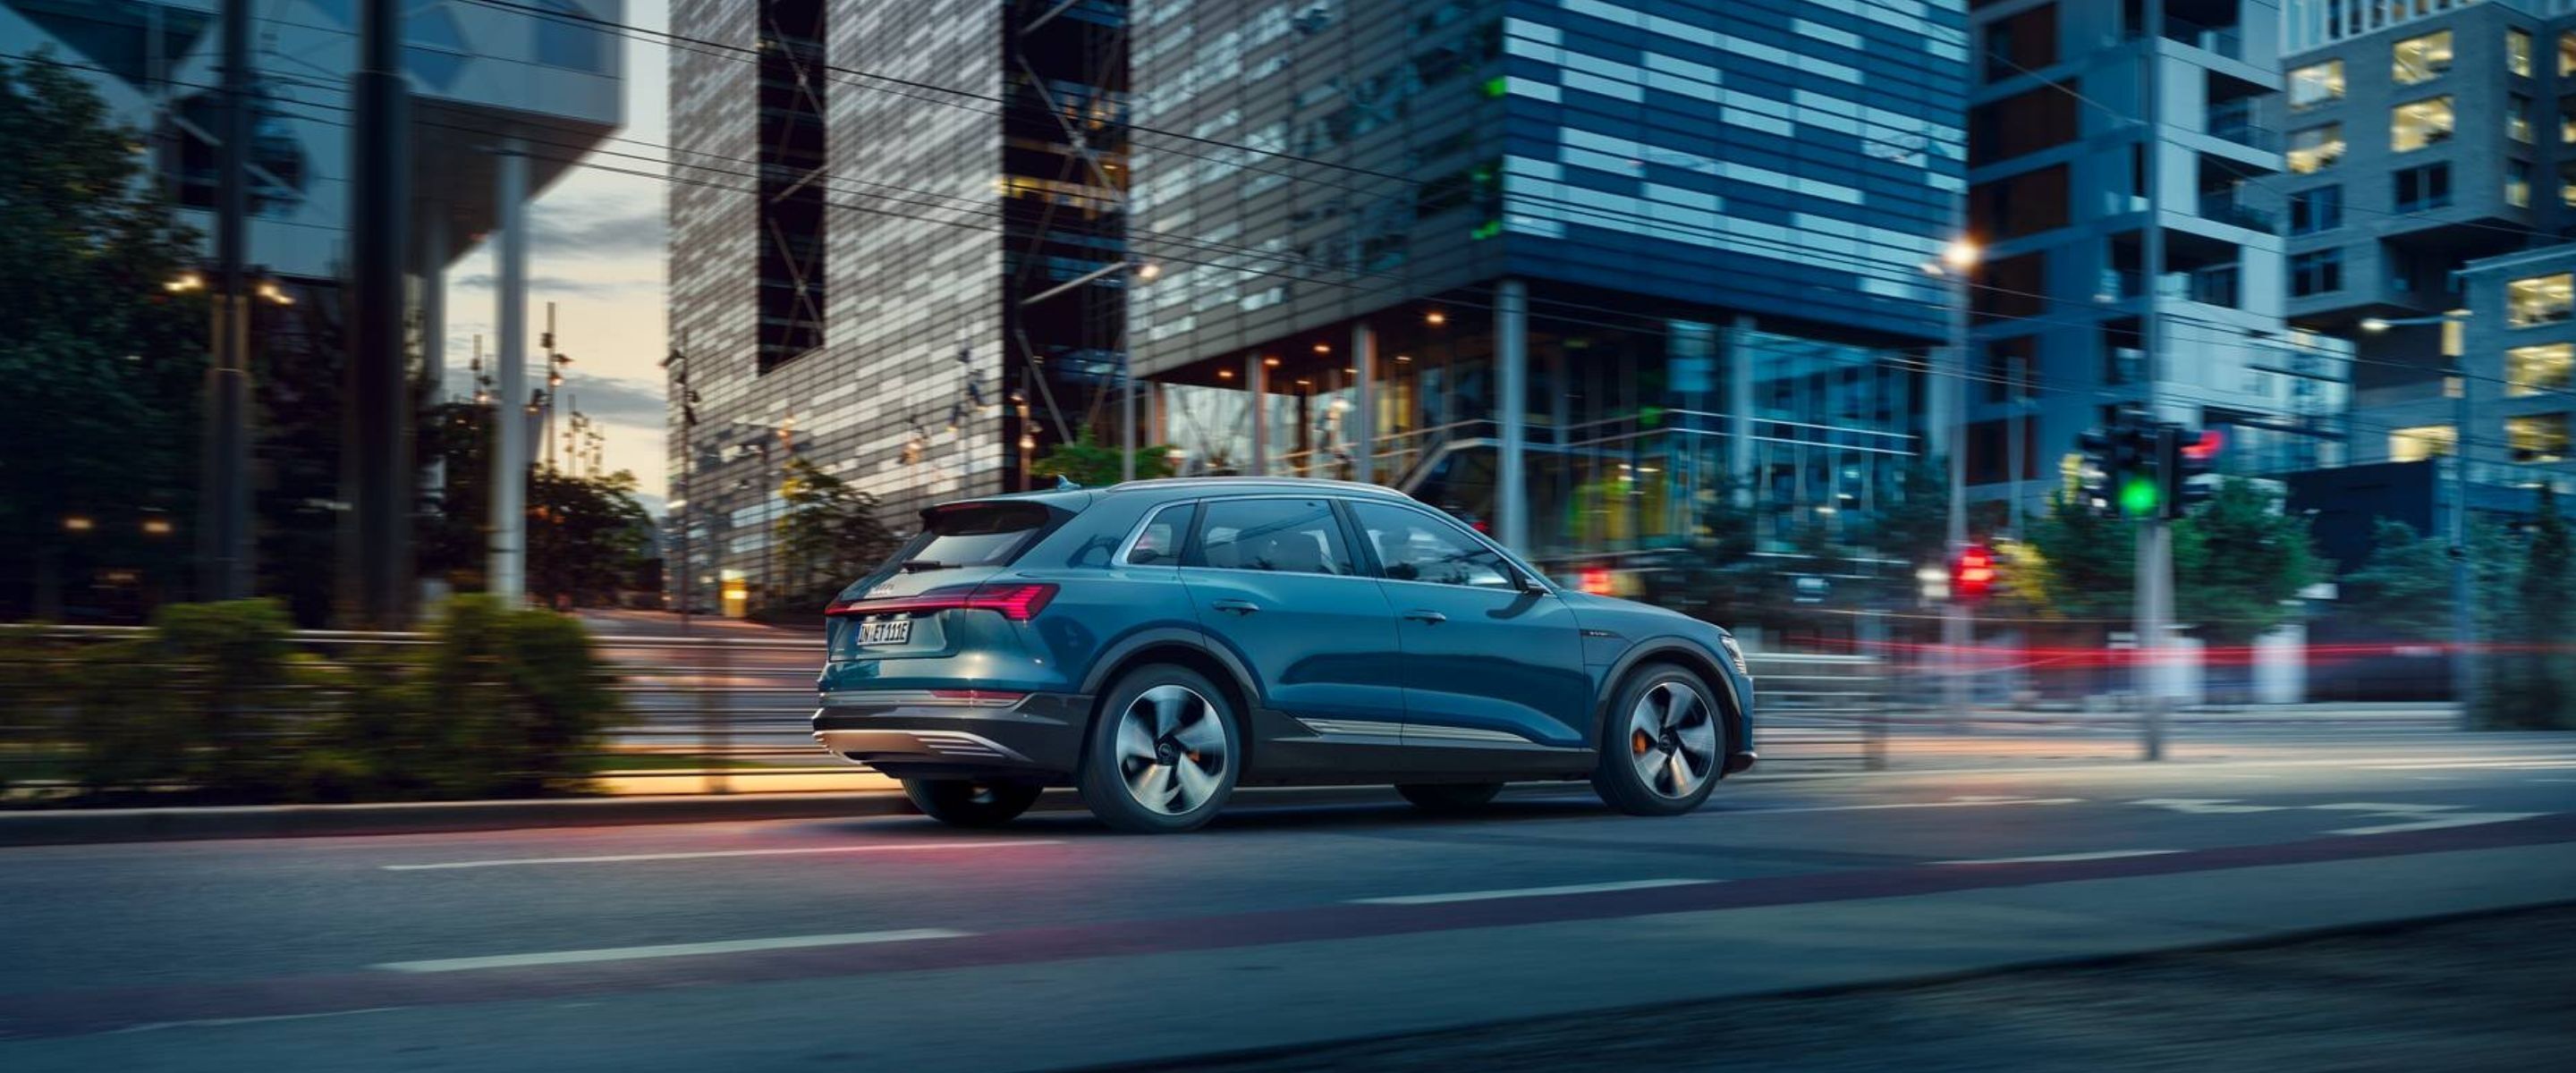 Audi e-tron brede visueal